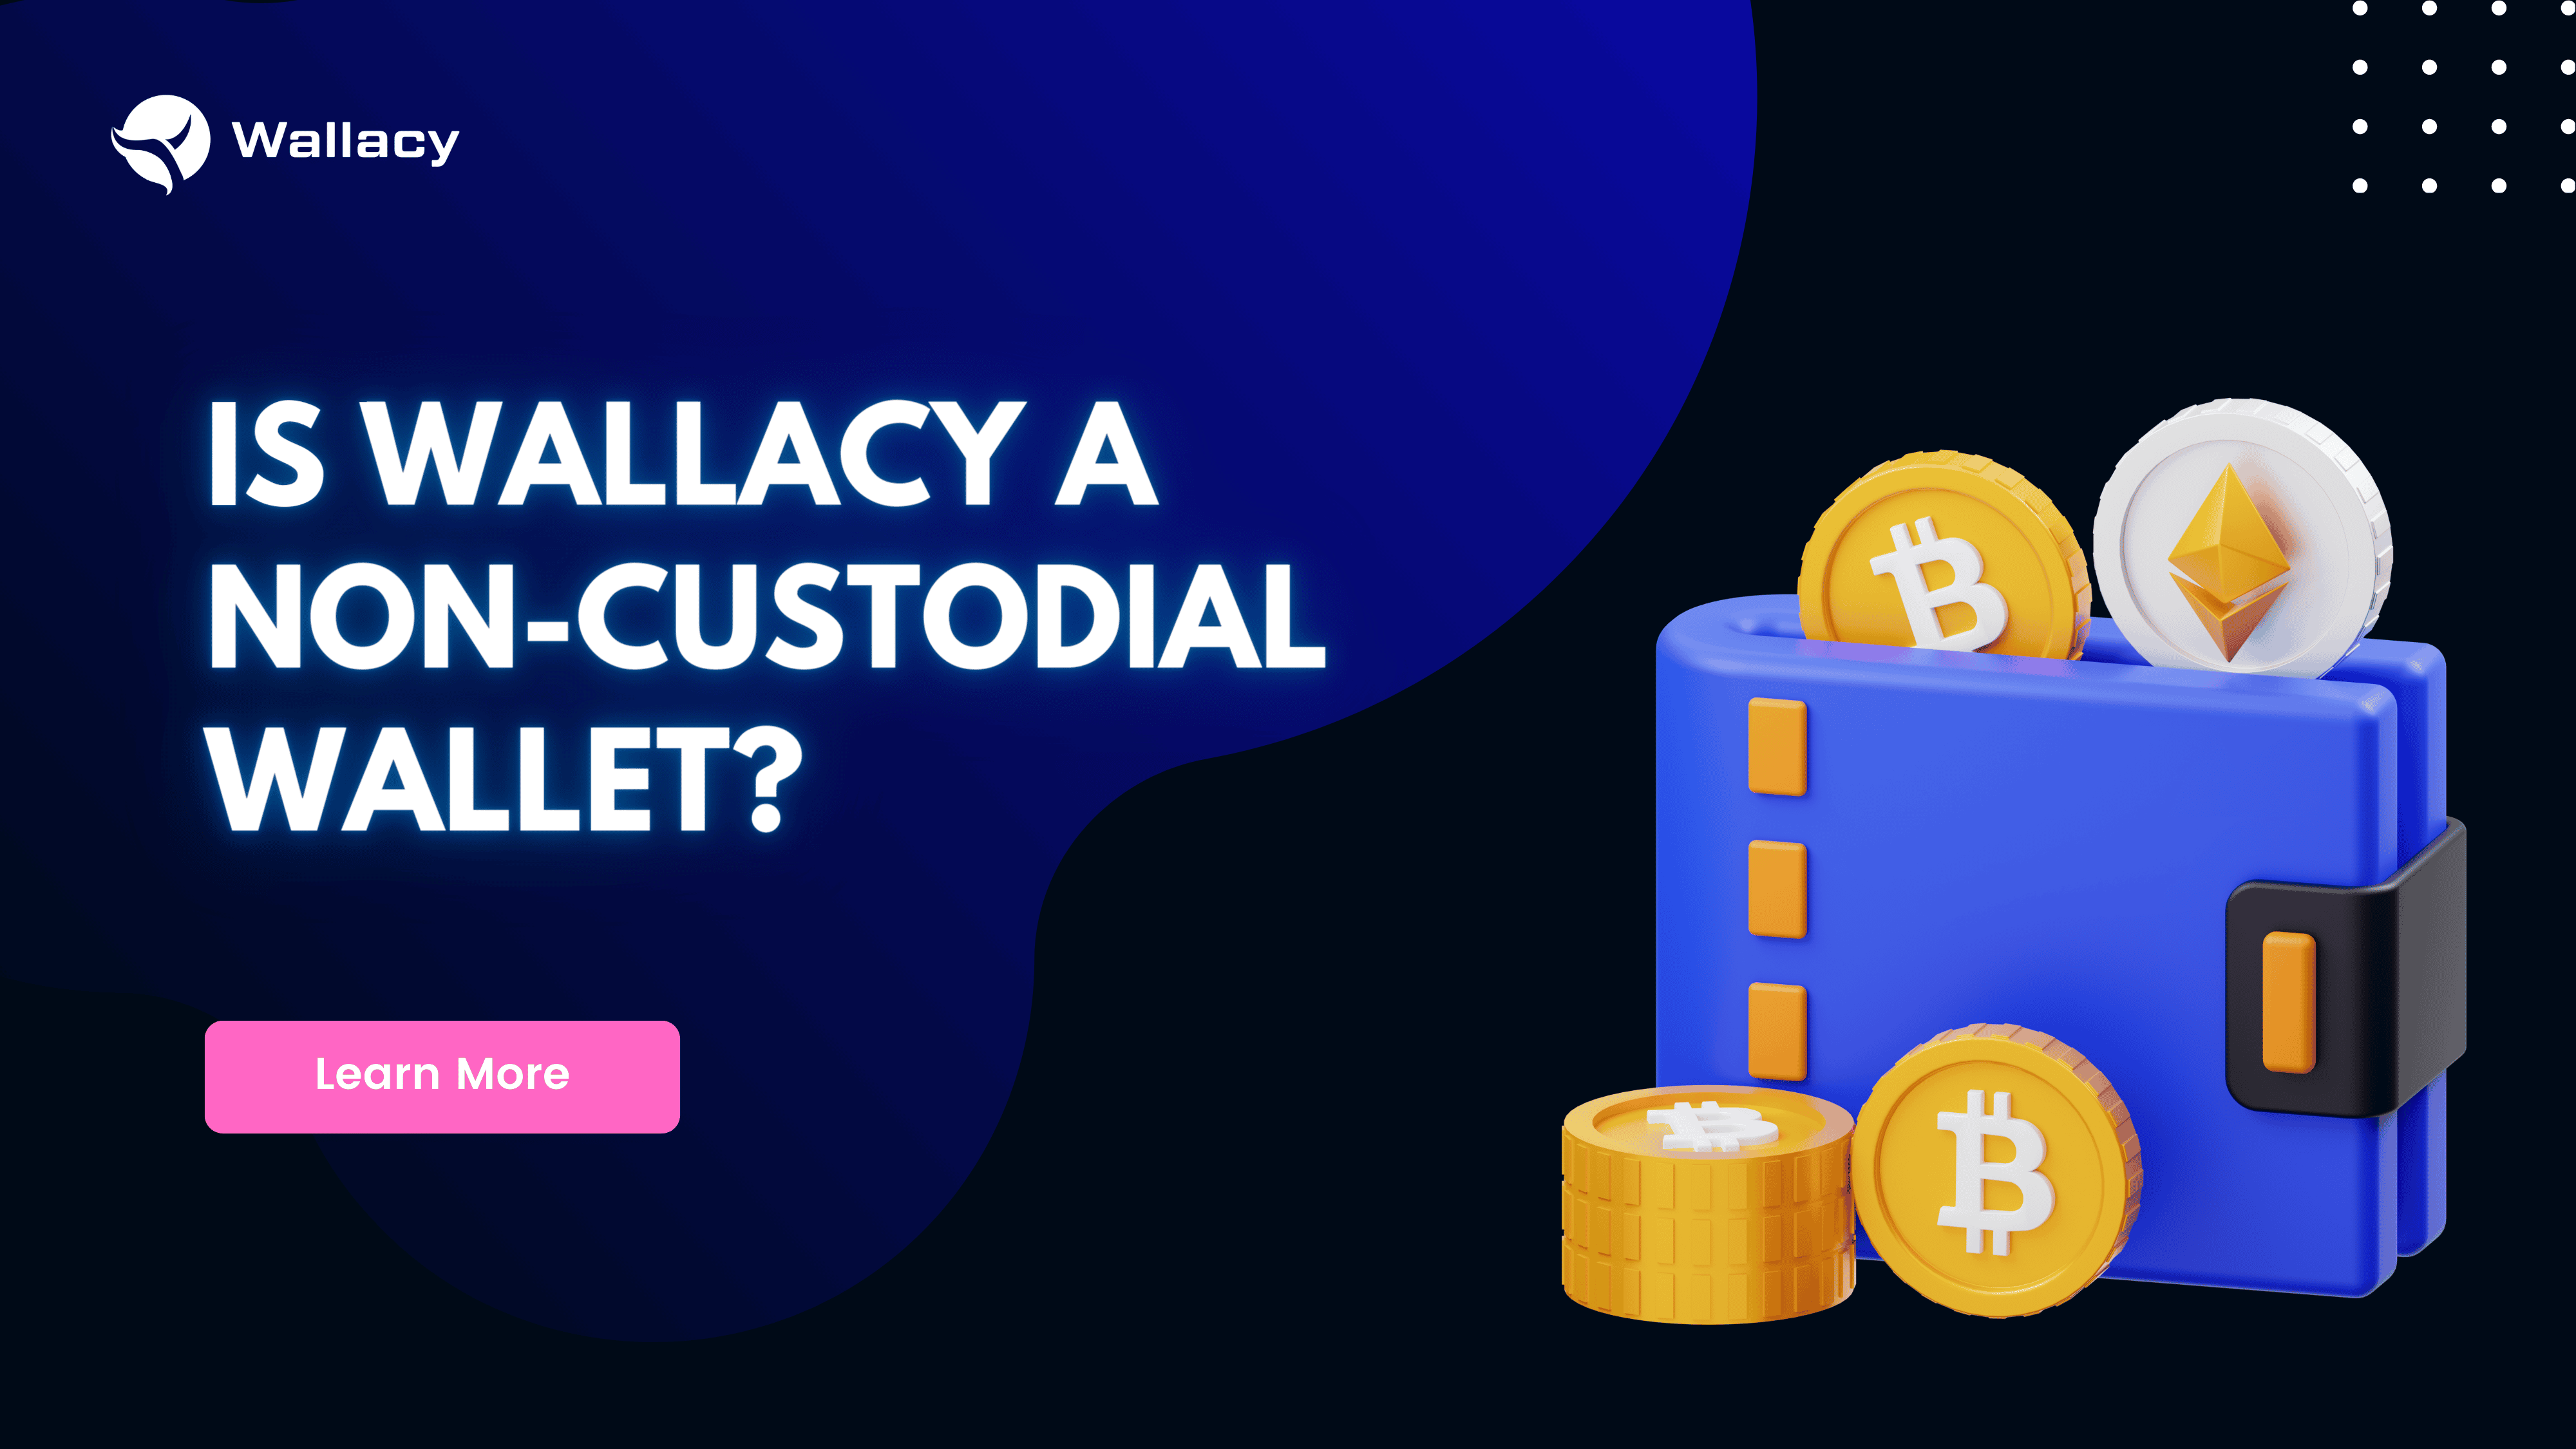 Is Wallacy a non-custodial wallet?